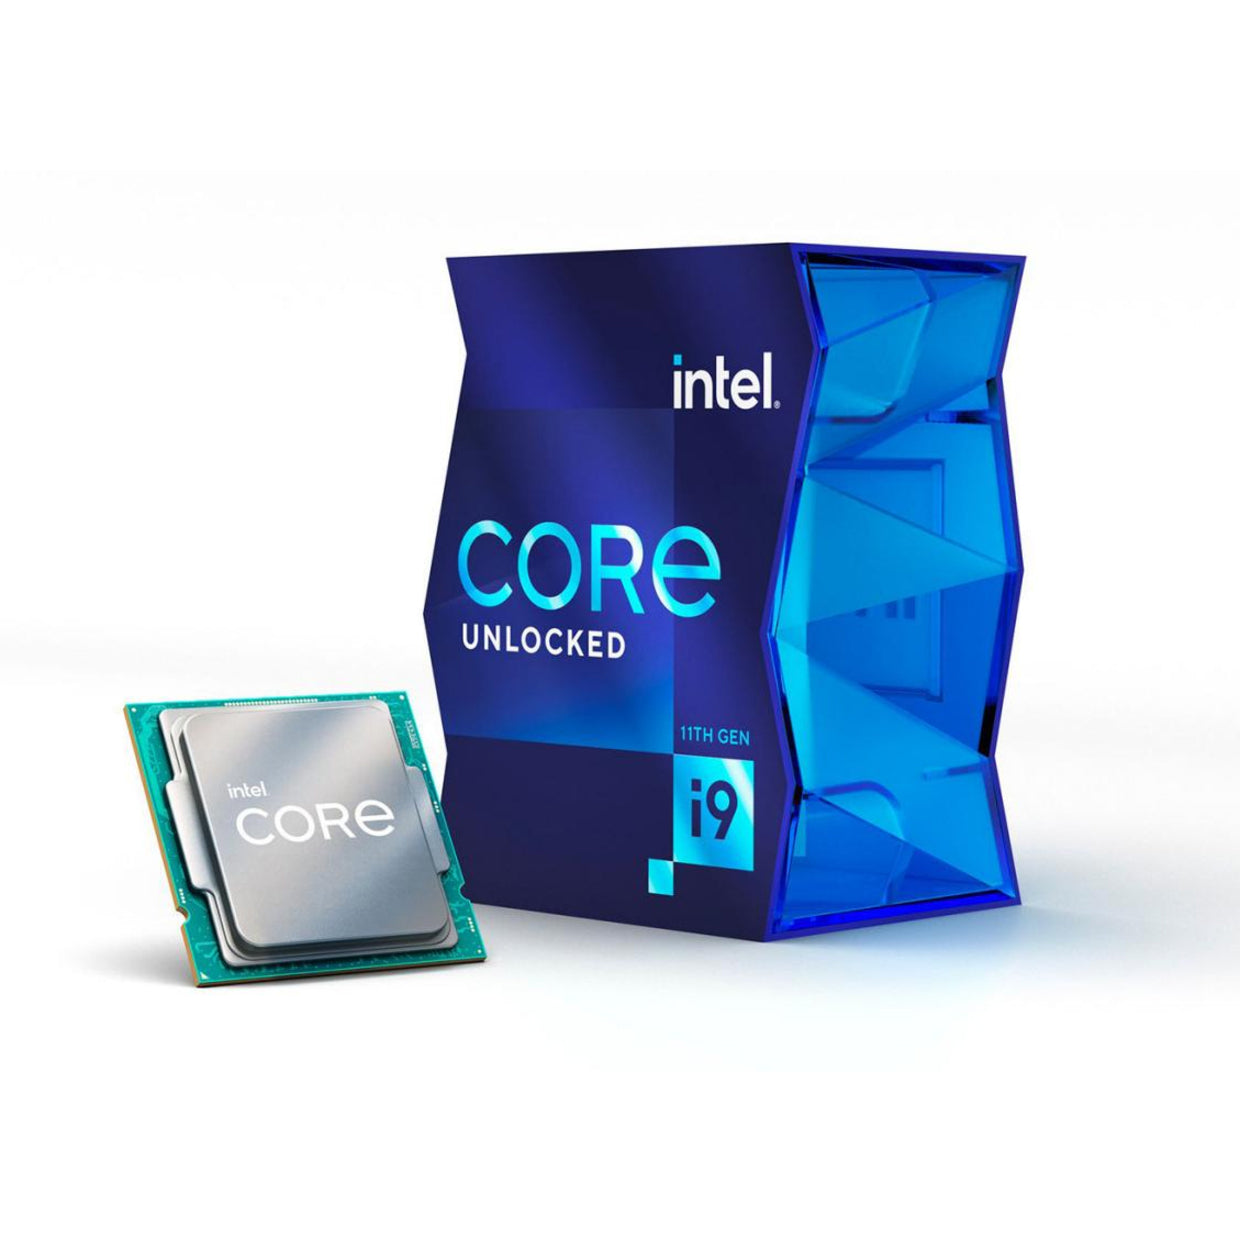 Intel BX8070811900K Core i9 Octa-core i9-11900K Desktop Processor, Up to 5.30GHz, 16MB Cache